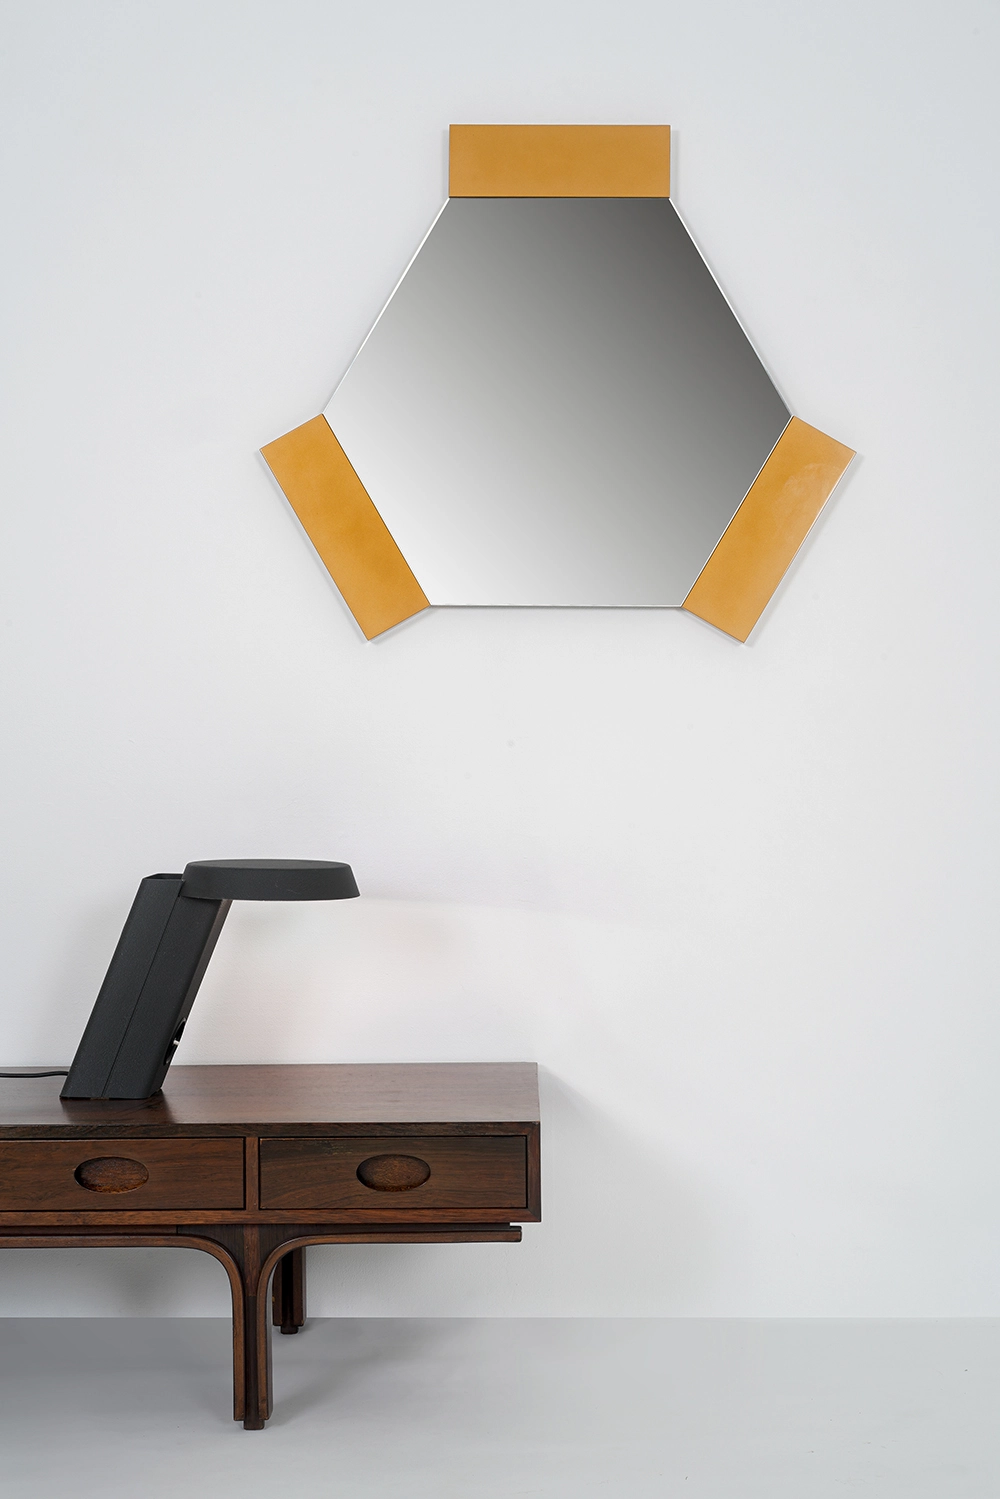 607 - Gino Sarfatti - Table light - Galerie kreo